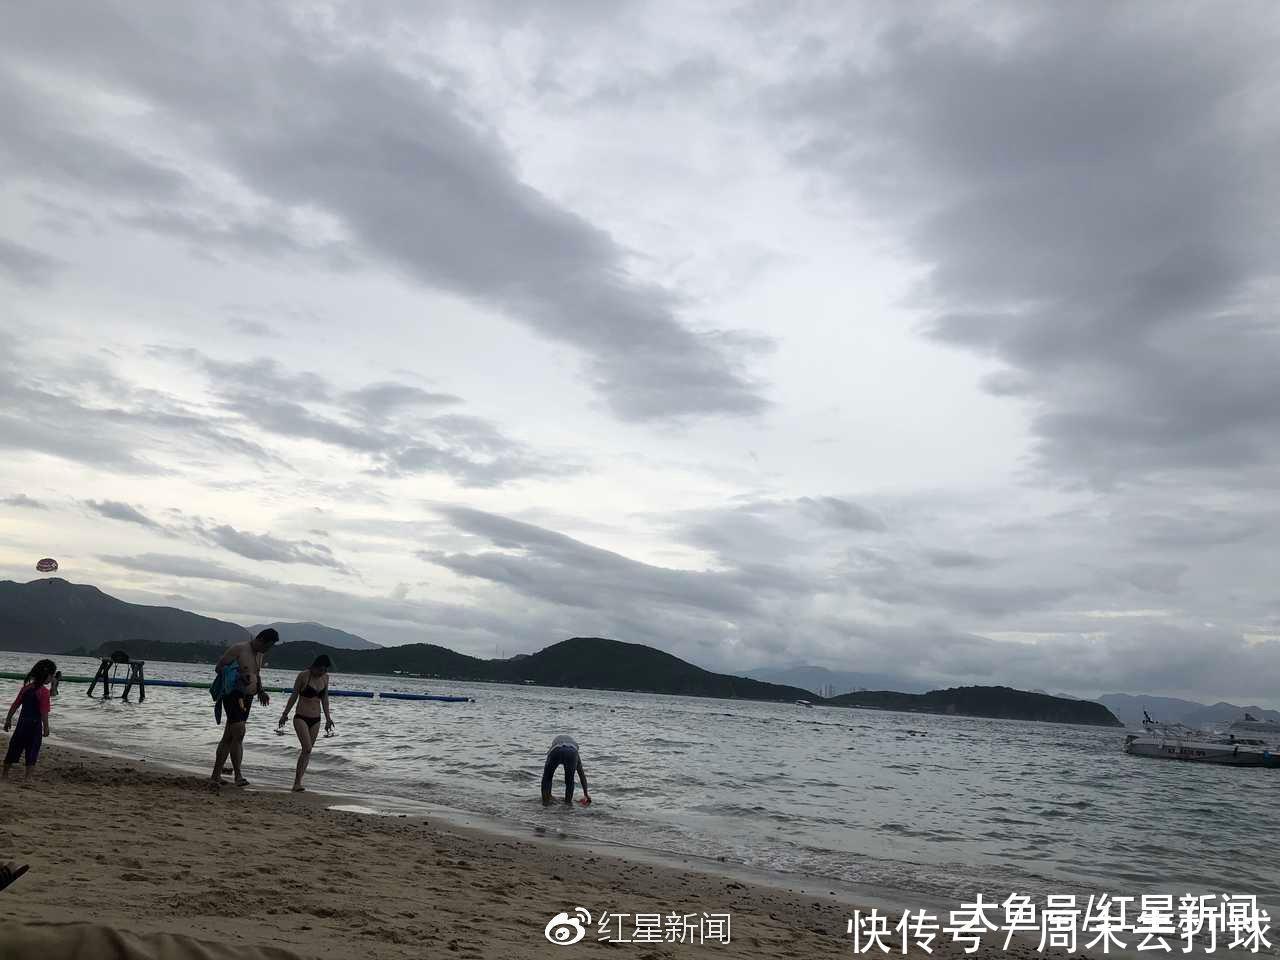 越南翻船事故 21名中国游客1死1伤 目击者 当天